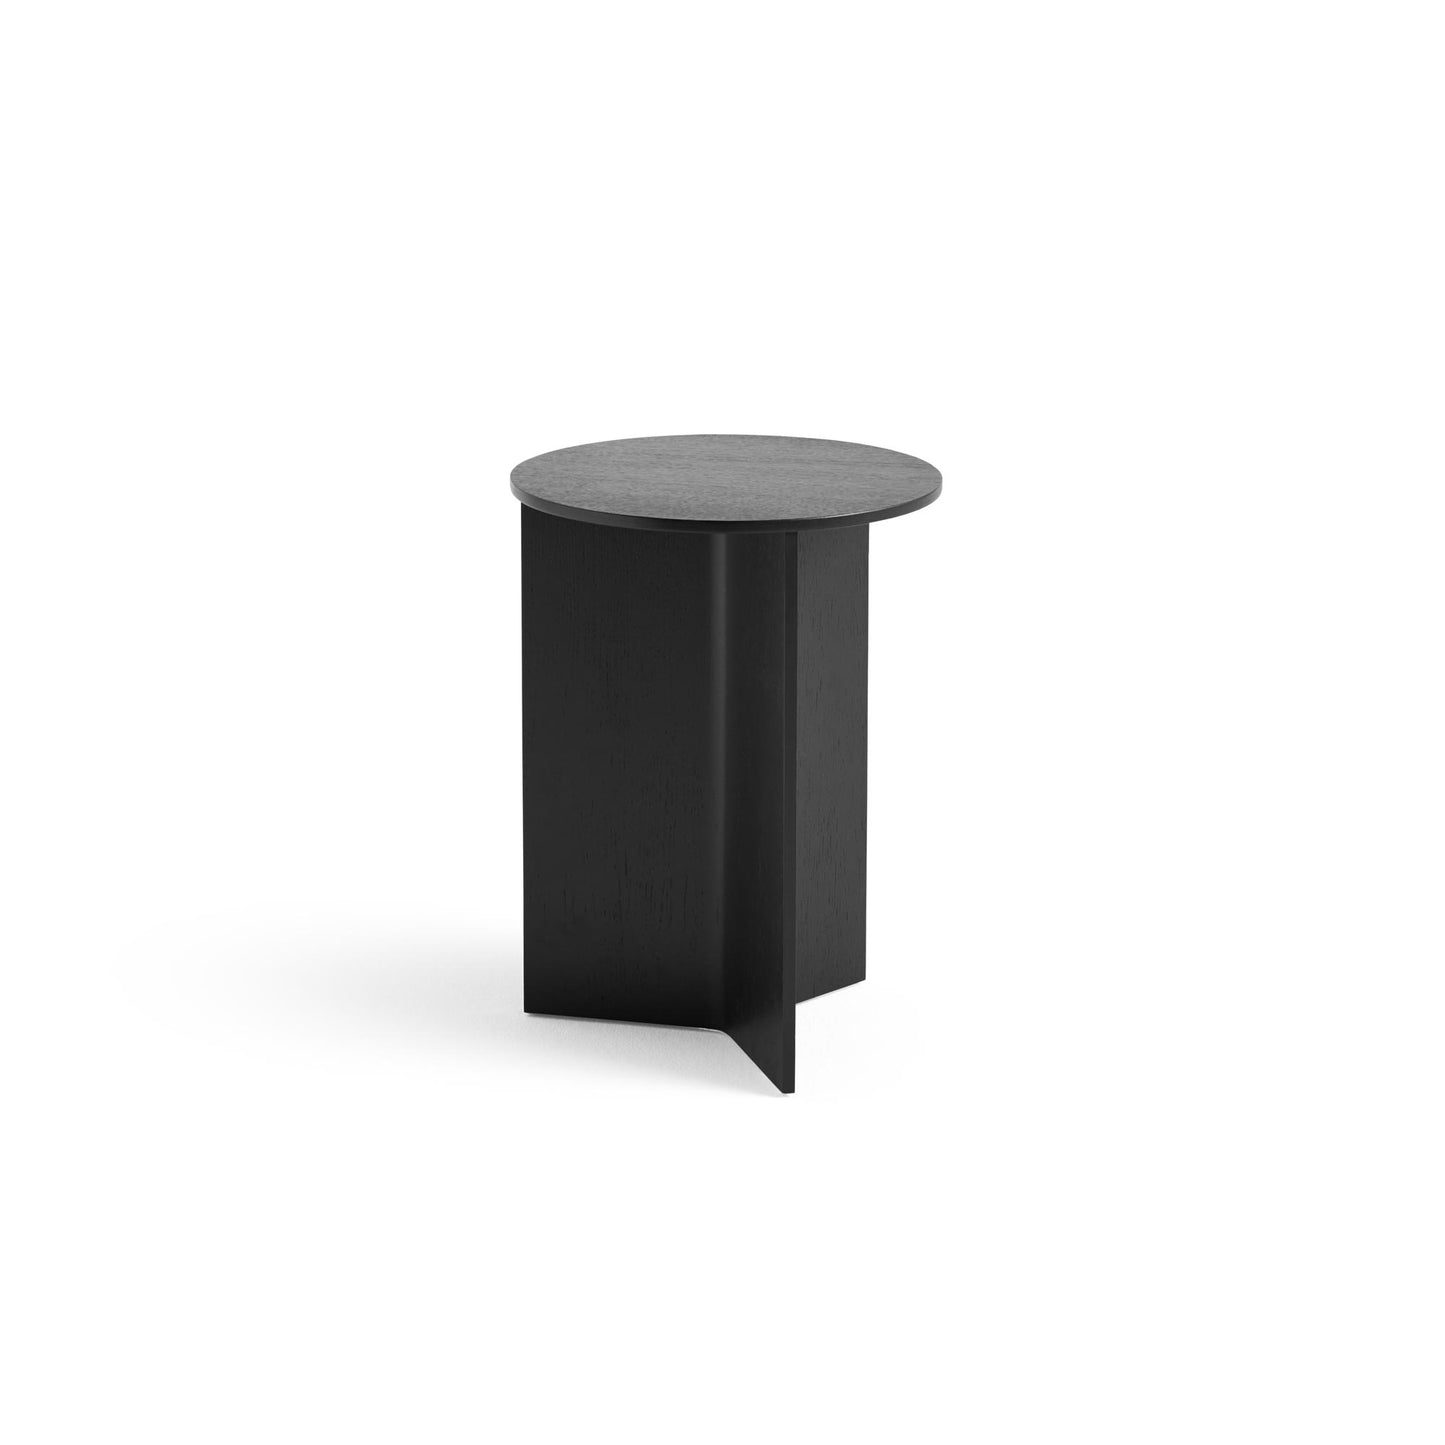 Slit Wood Coffee Table Round Ø35 by HAY #Black